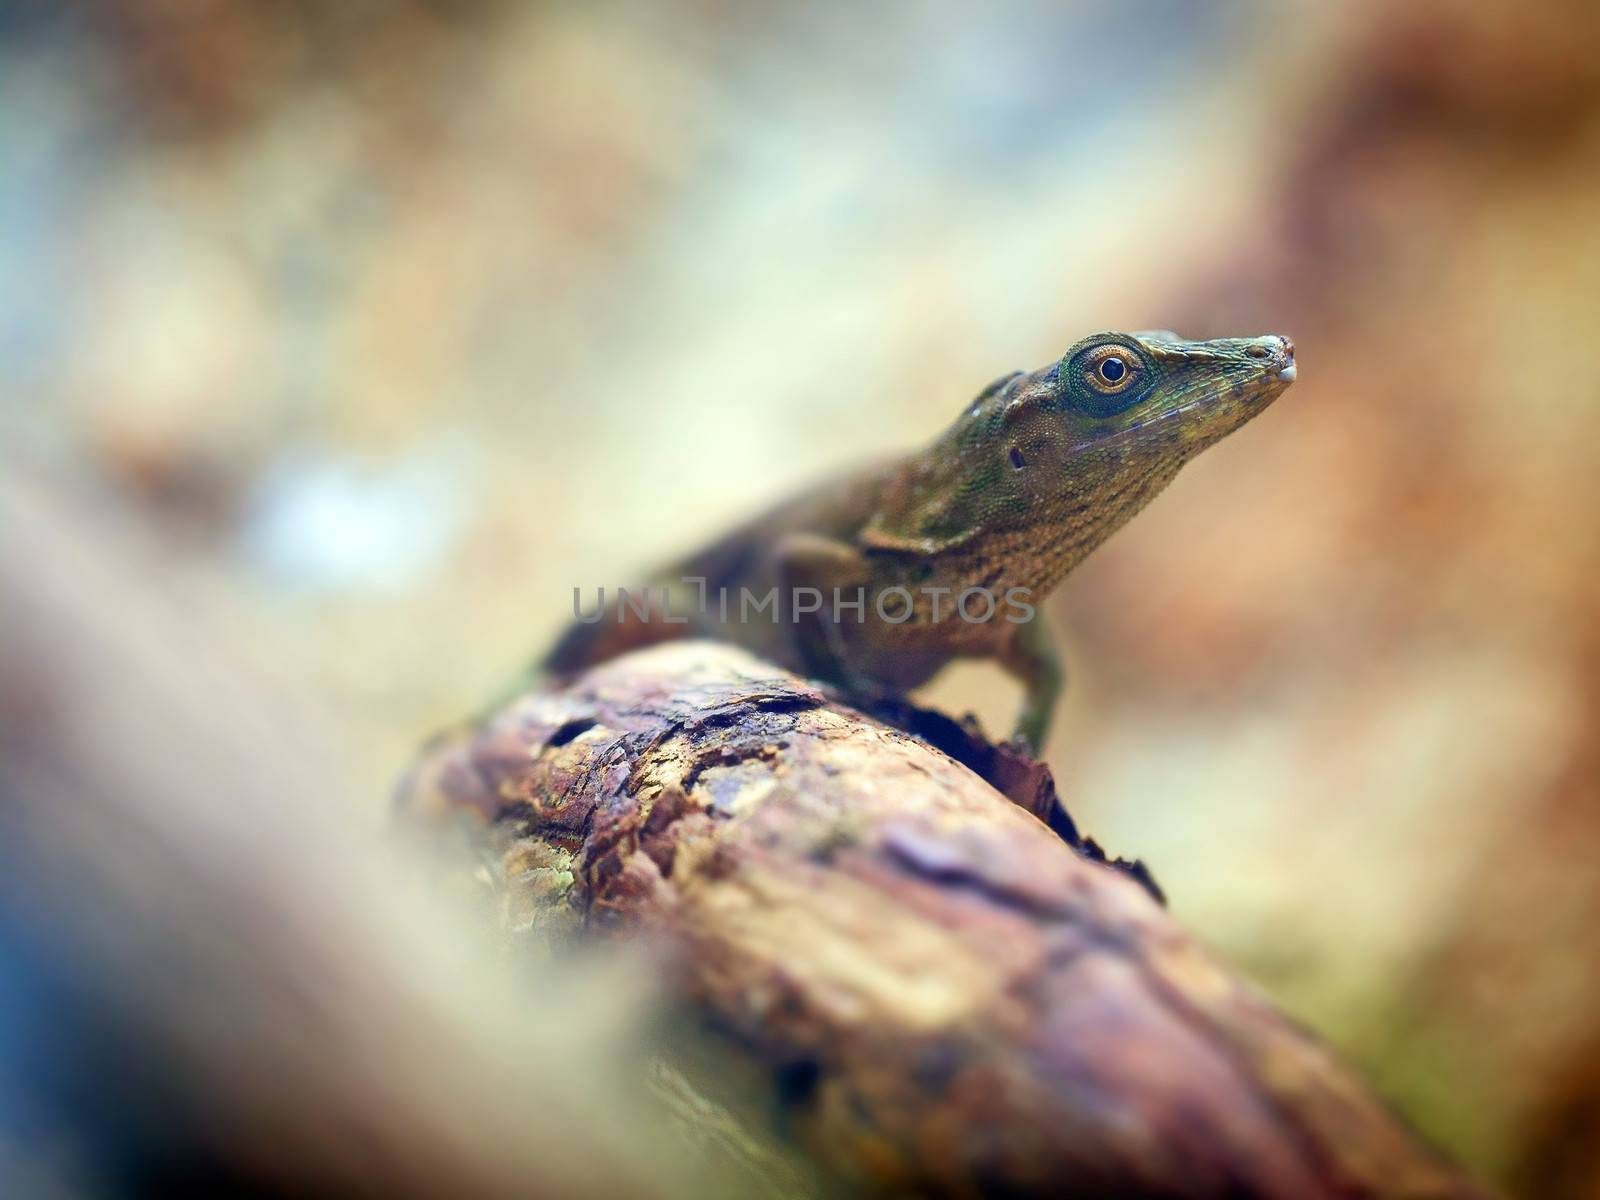 Lizard on tree trunk by dynamicfoto